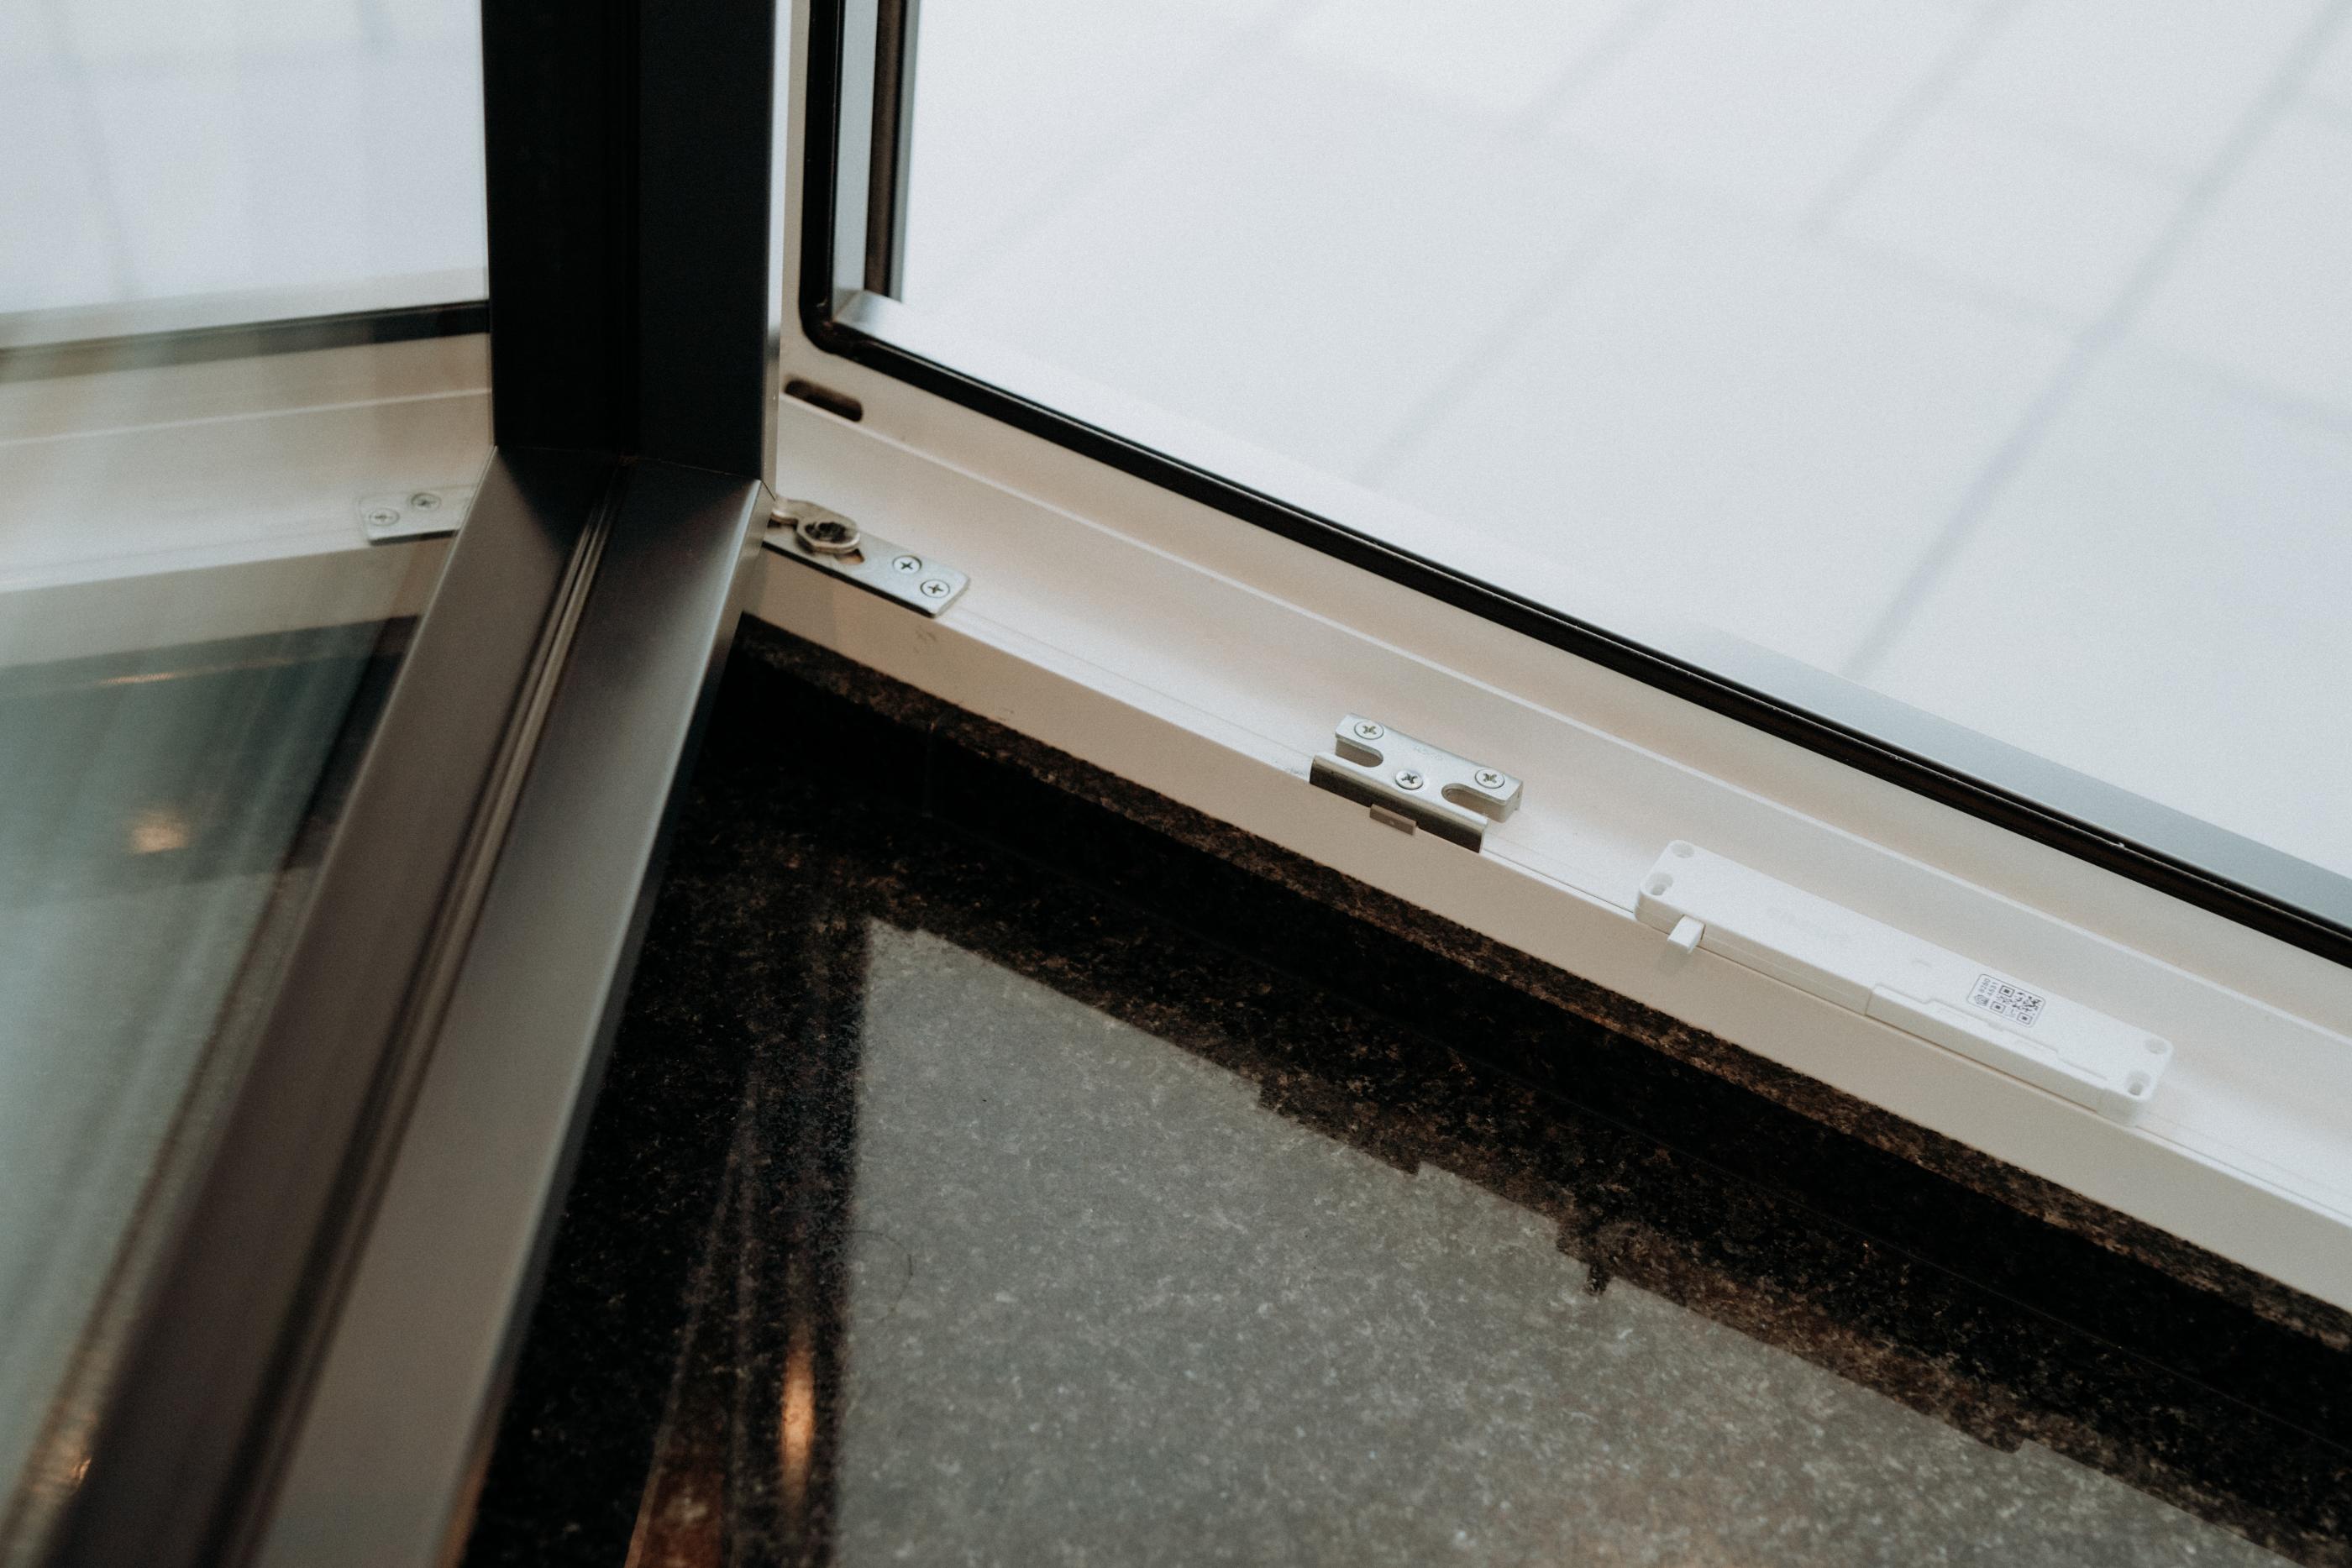 Fenstersensor und Einbruchschutz